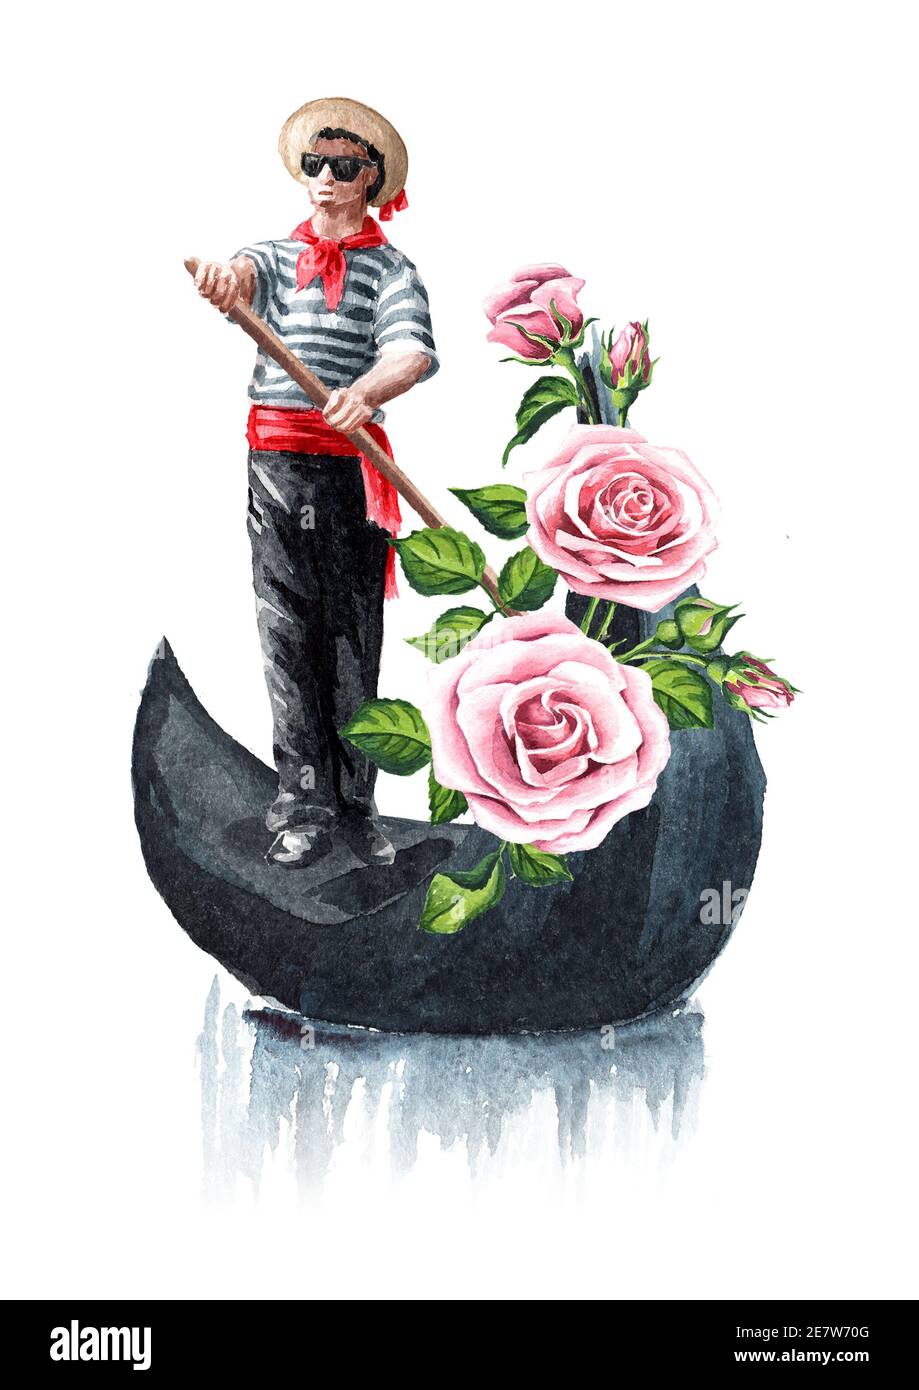 Gondolier vénitien en vêtements traditionnels, en gondole avec fleurs. Illustration aquarelle dessinée à la main isolée sur fond blanc Banque D'Images